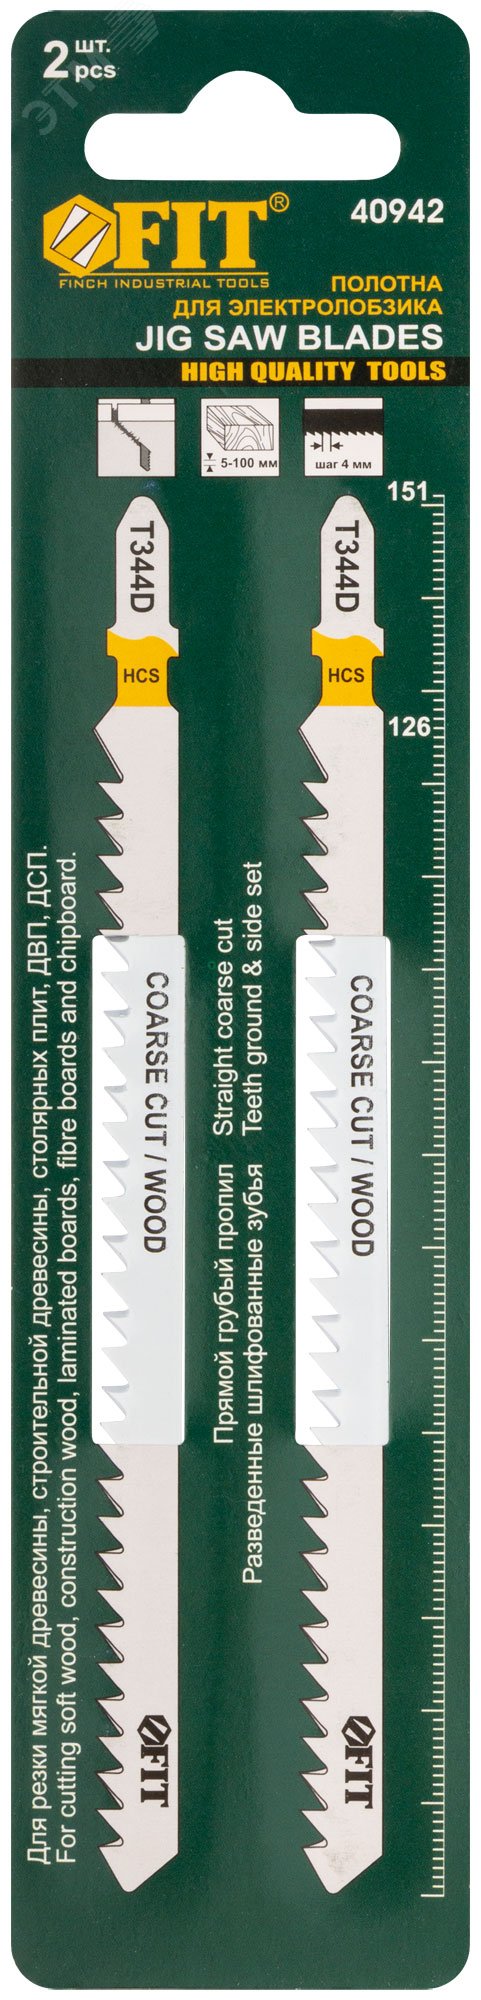 Полотна по дереву, HCS, разведенные, шлифованные зубья 151/126/4 мм (T344D), 2 шт 40942 FIT - превью 3